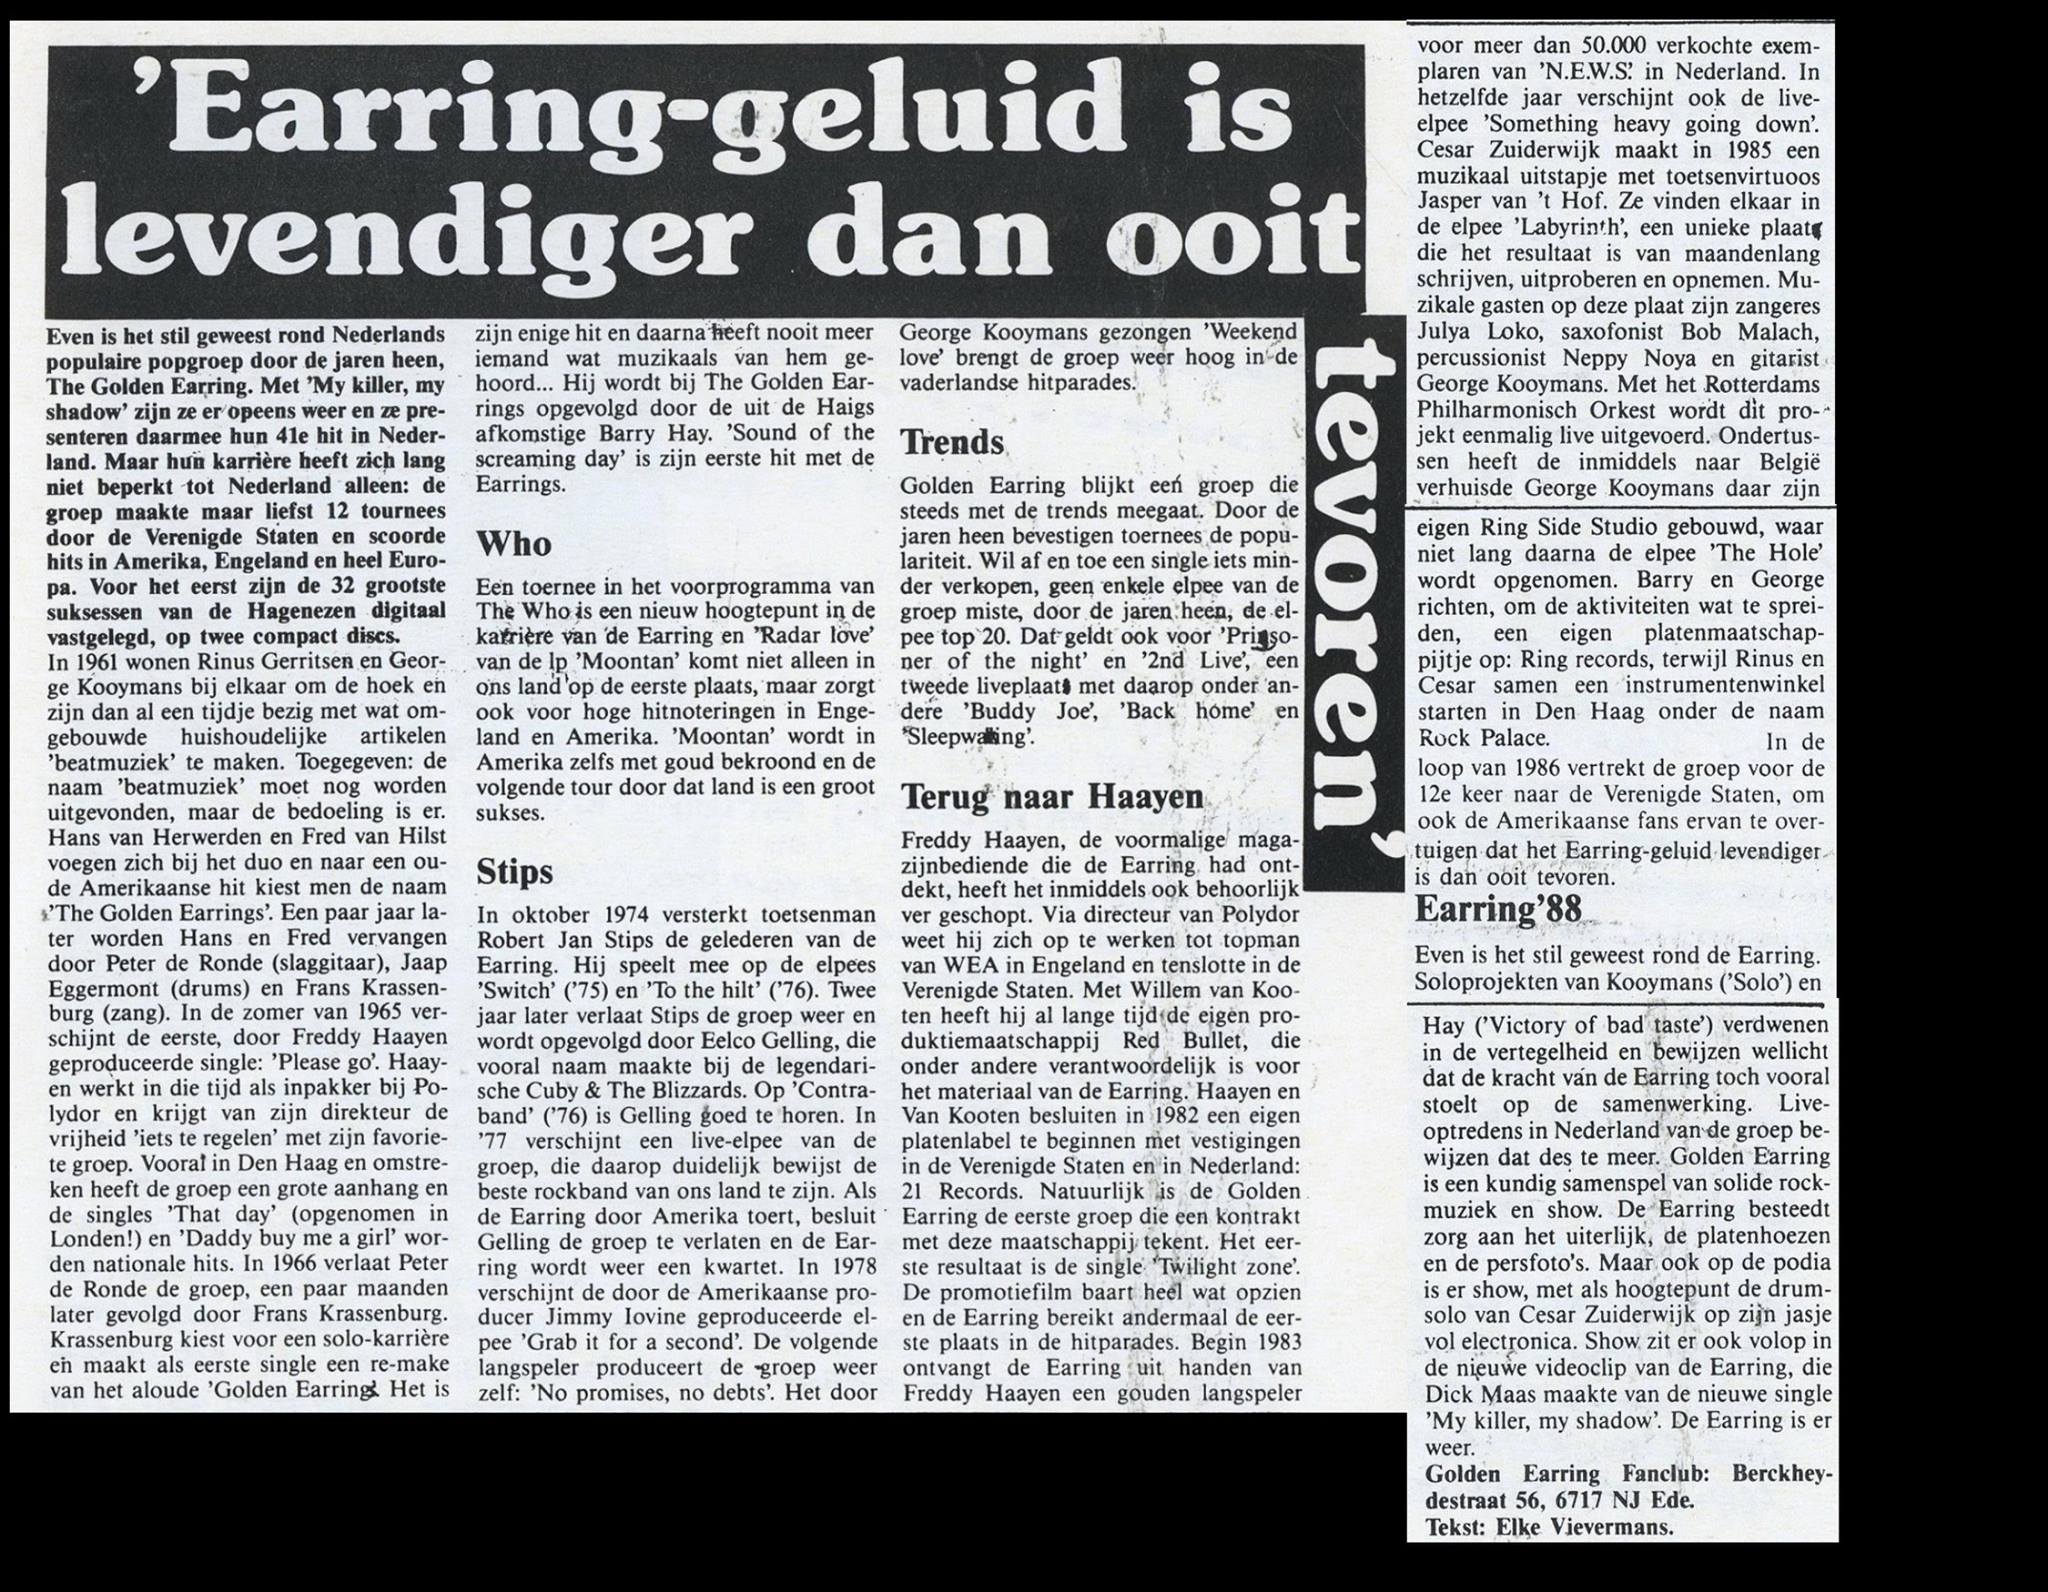 Golden Earring article Earring-geluid is levendiger dan ooit